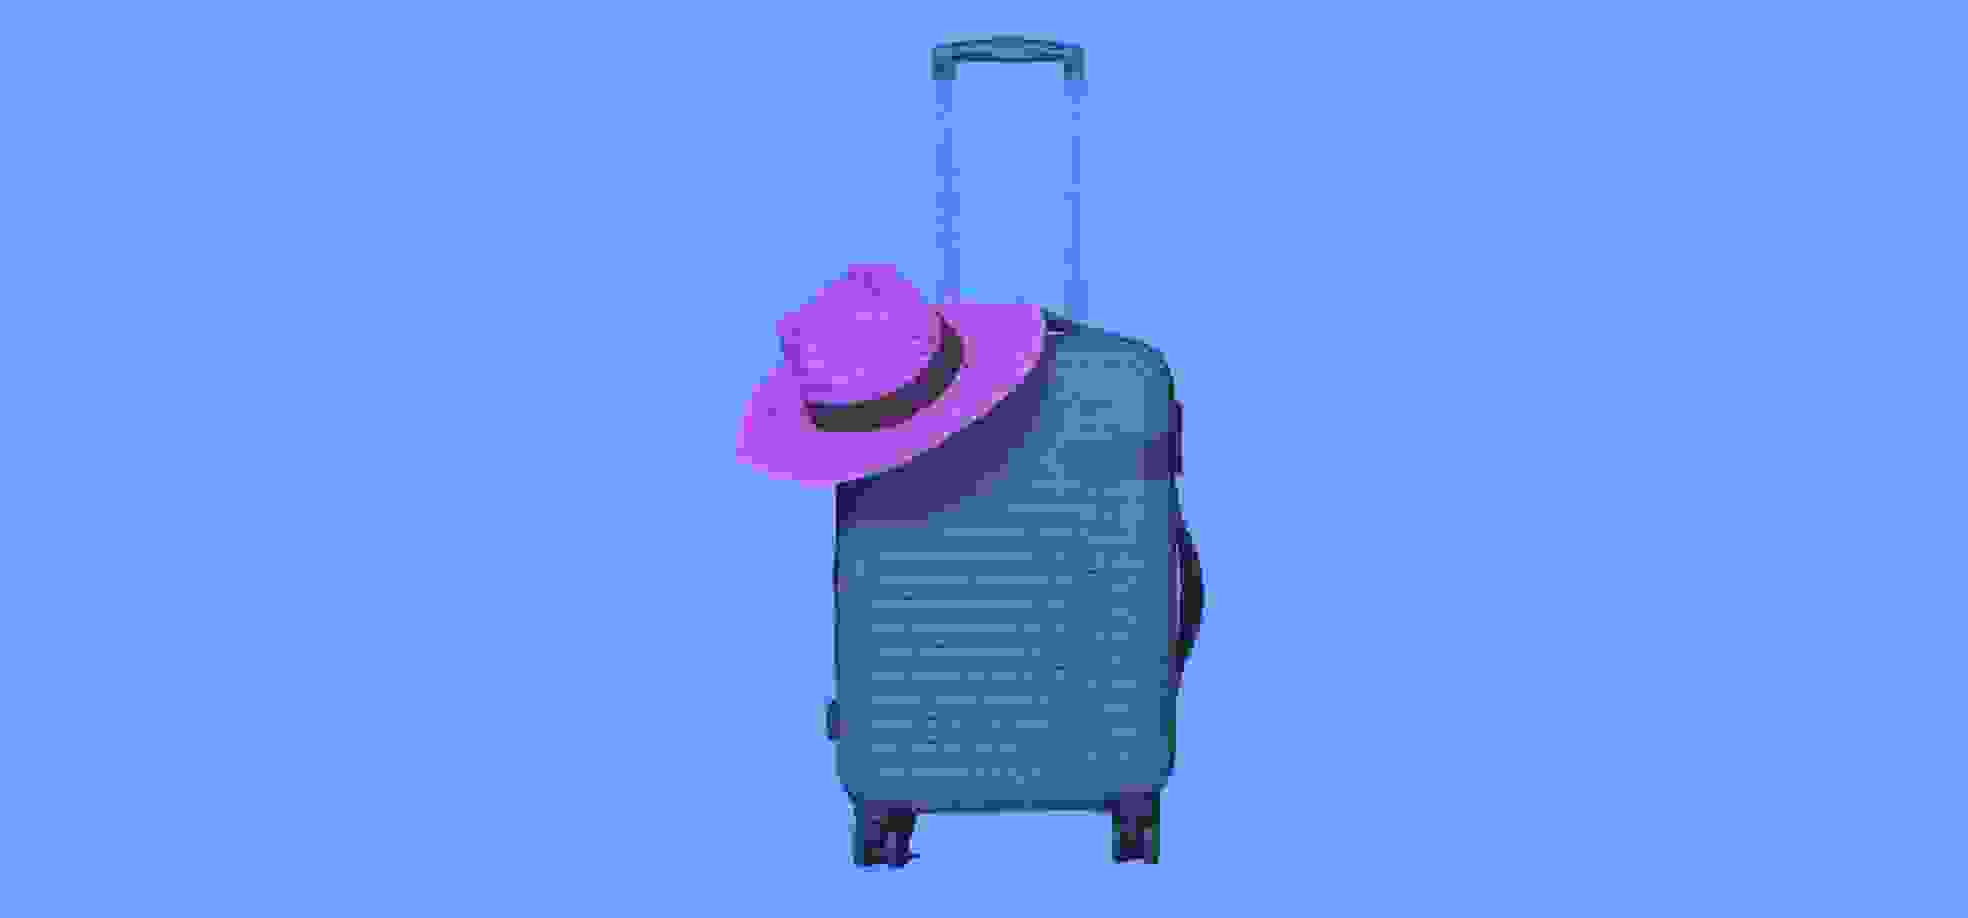 un sombrero de paja yace sobre una maleta